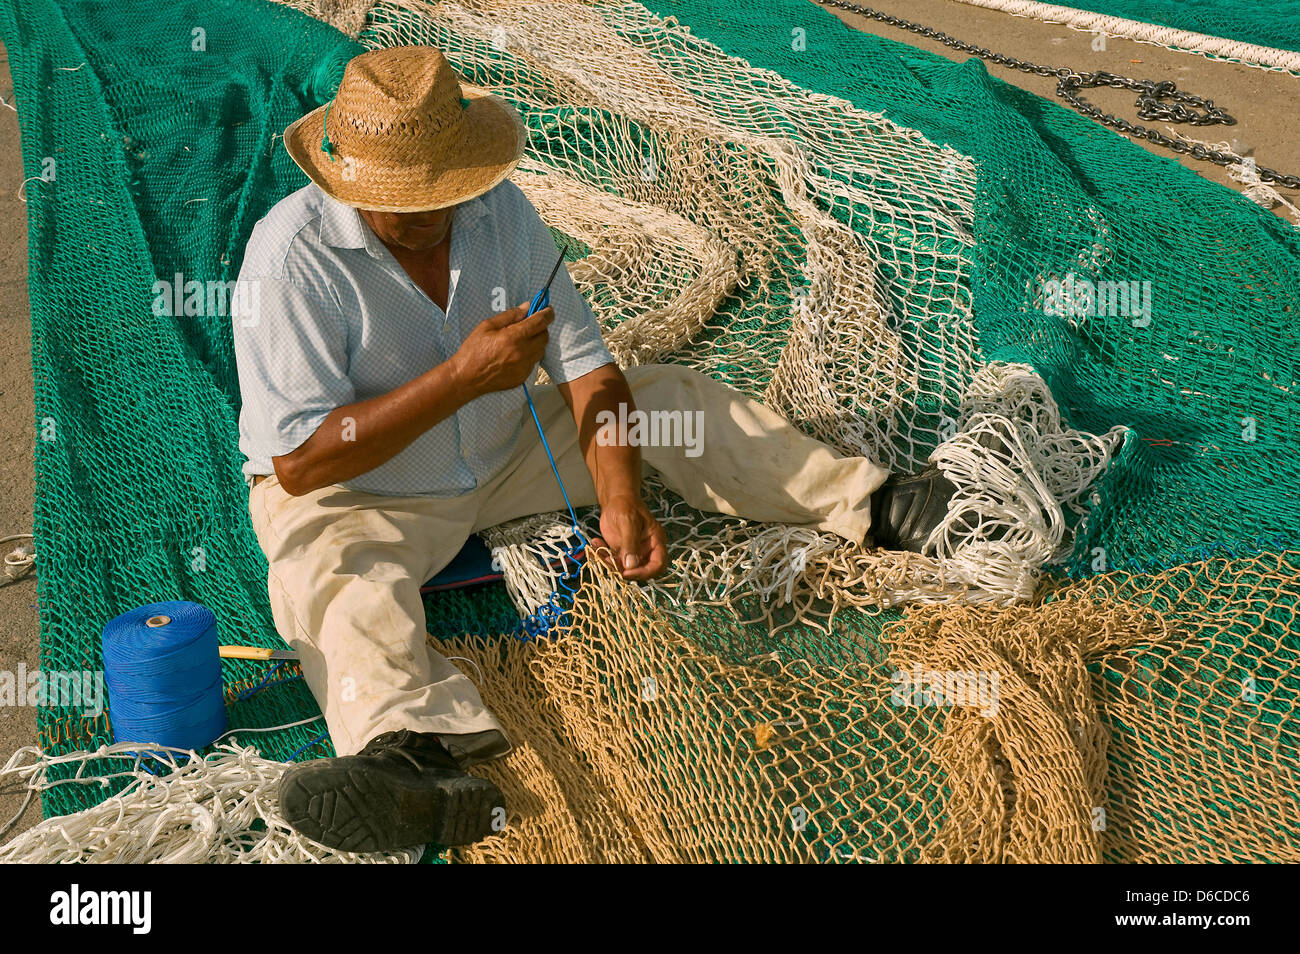 Cosiendo redes de pesca, Isla Cristina, Huelva, provincia, región de Andalucía, España Foto de stock